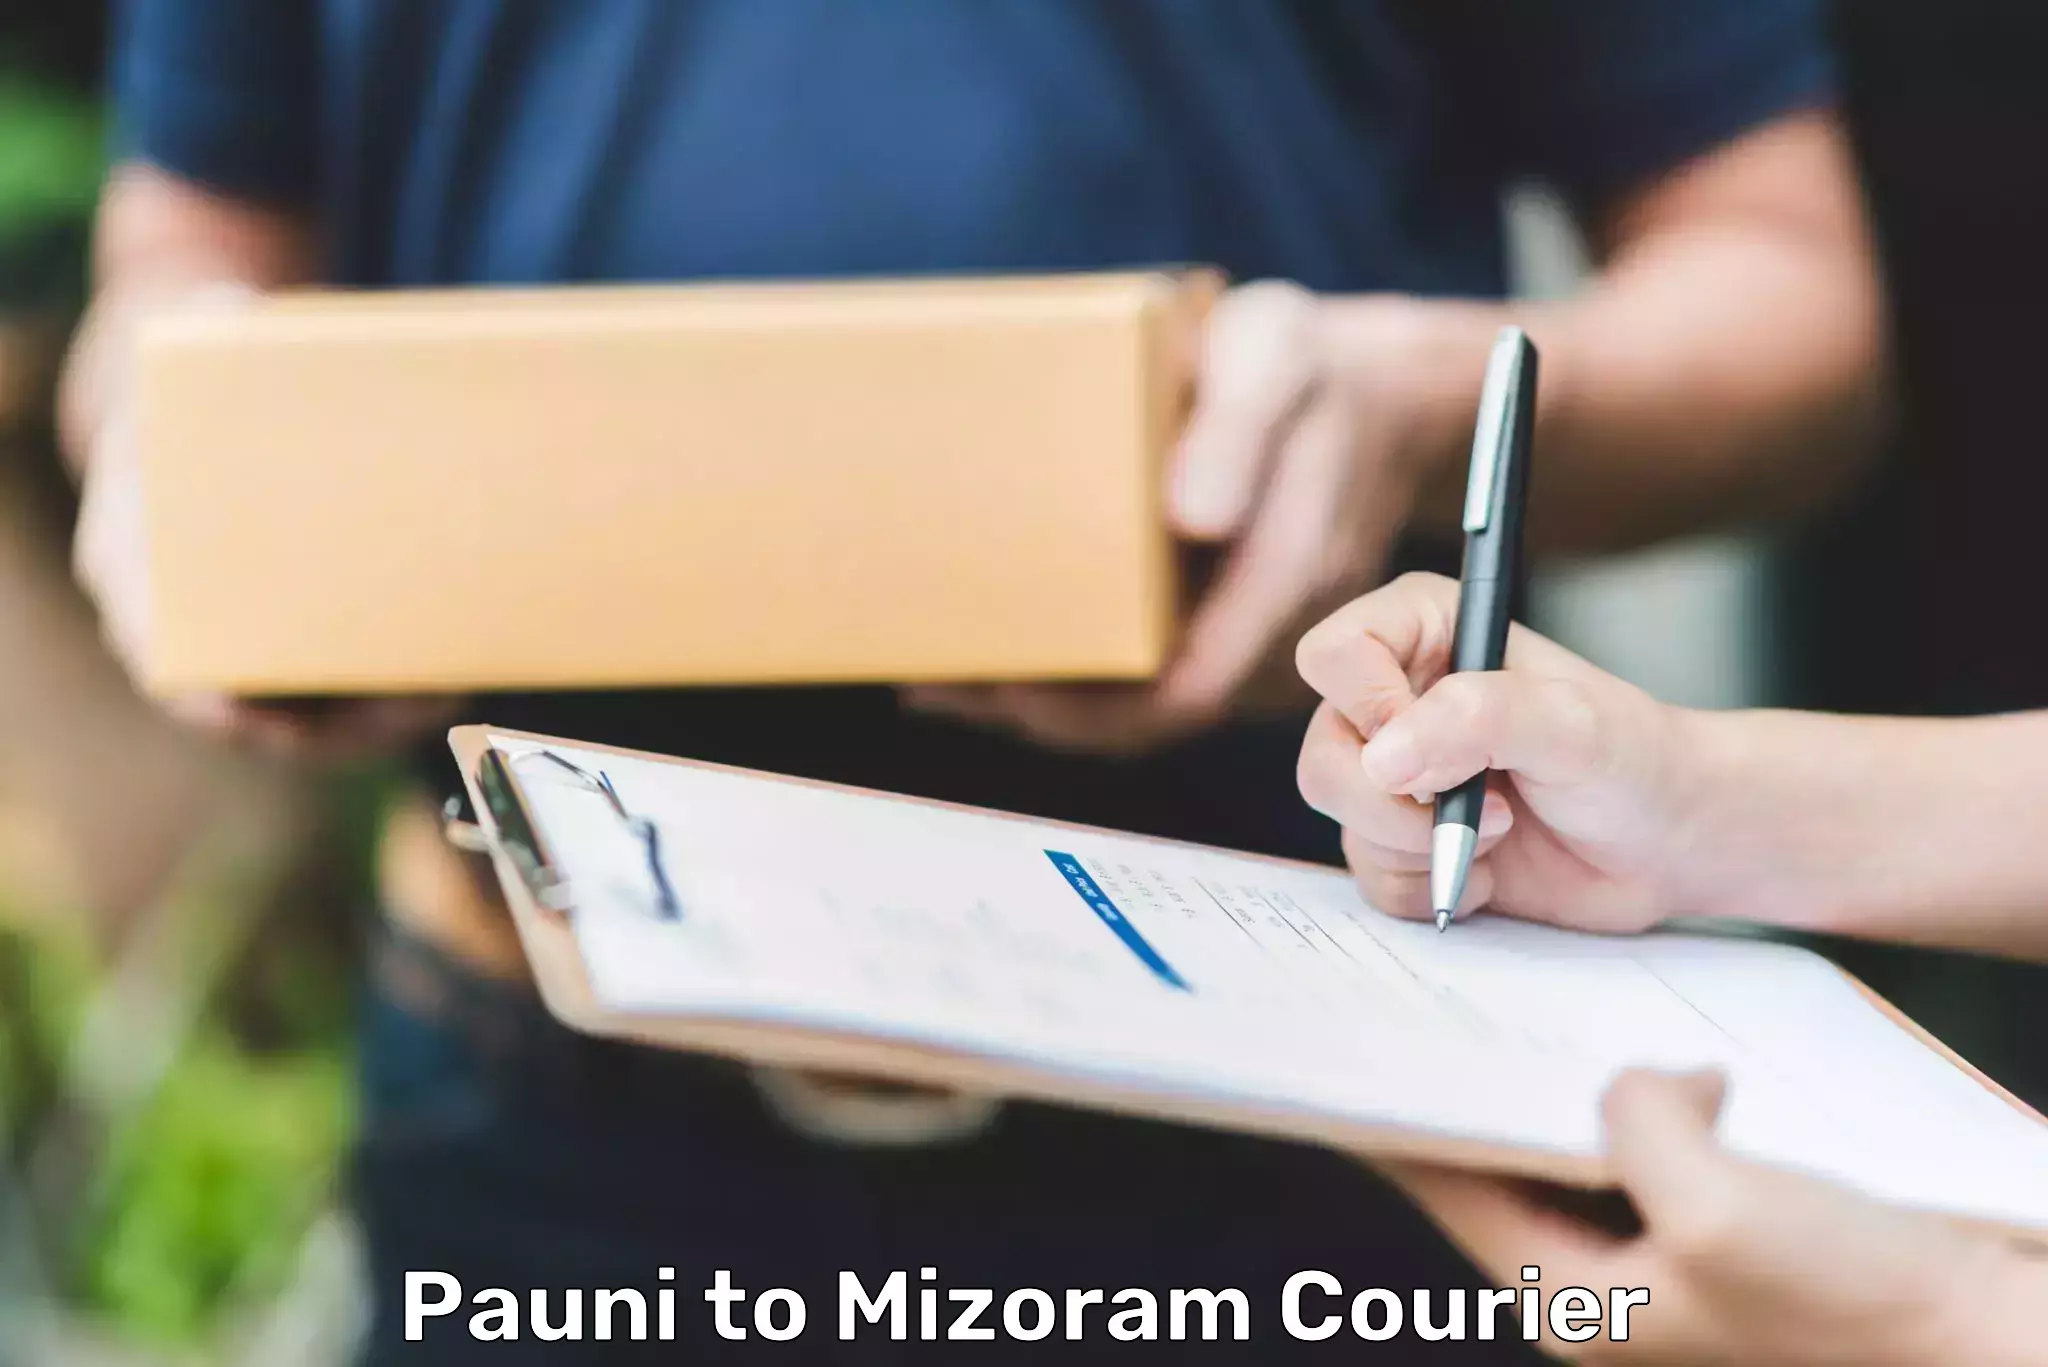 Courier service comparison Pauni to Mizoram